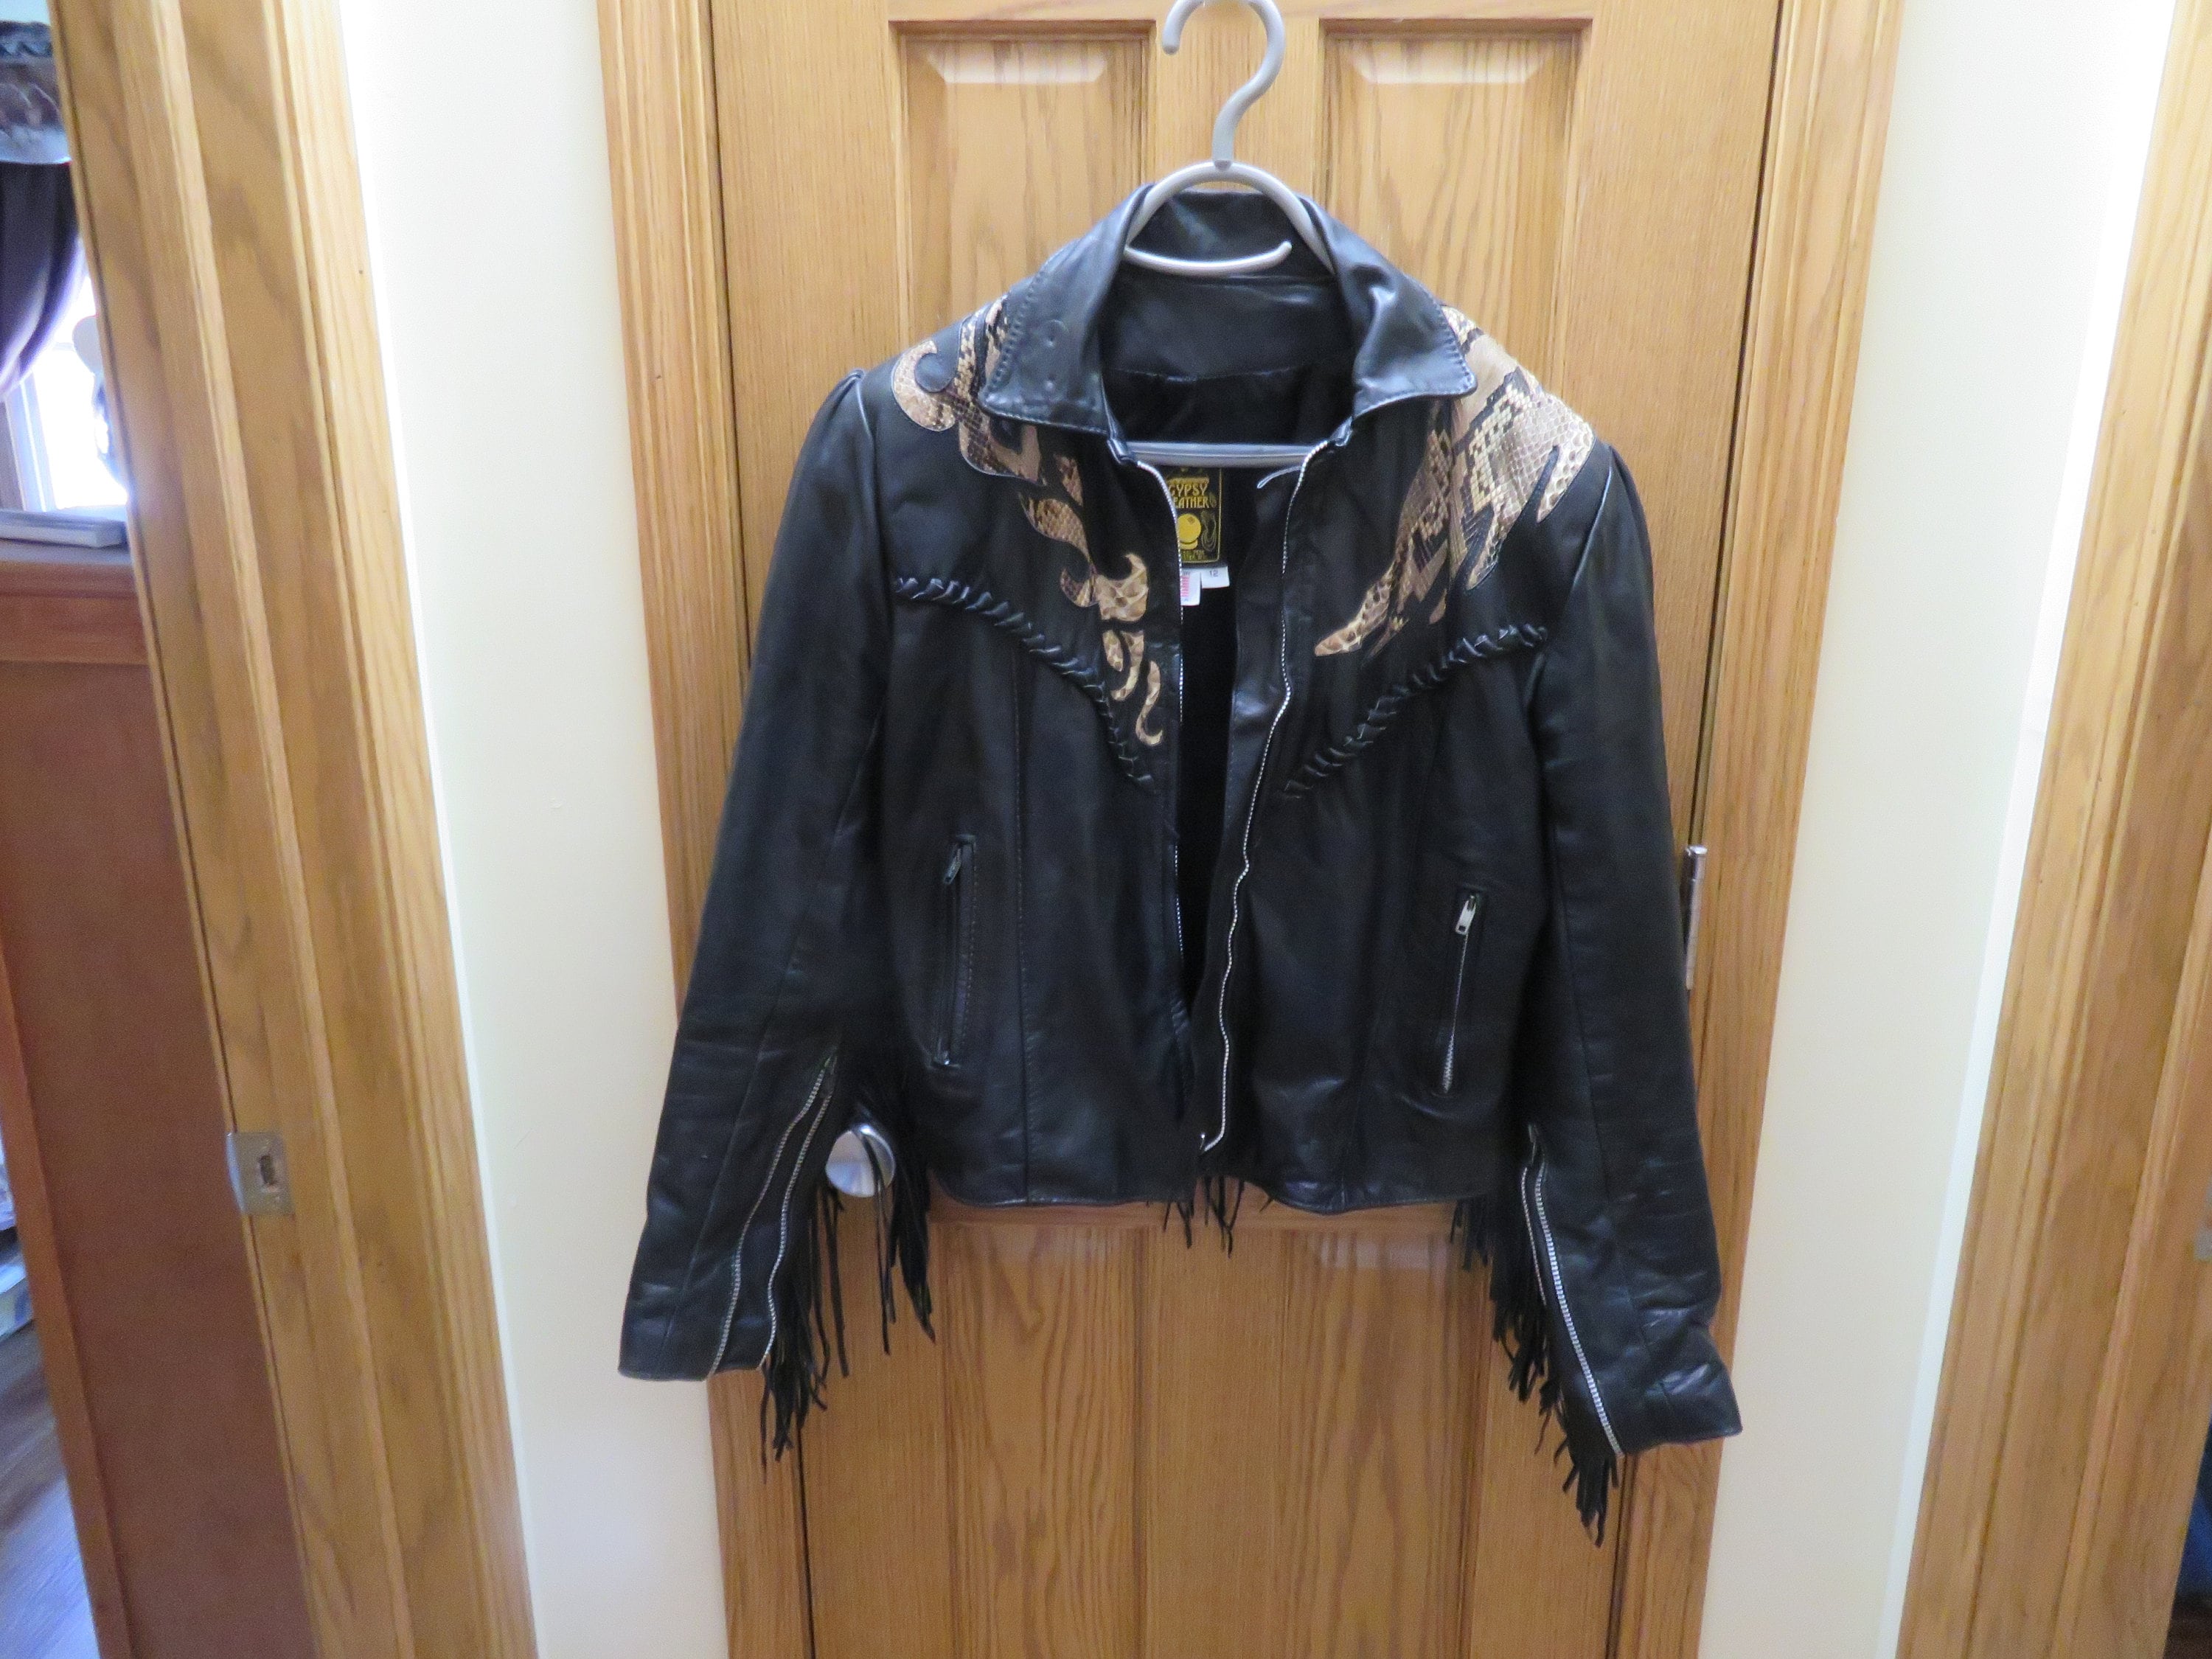 Leather - Jacket Etsy Gypsy